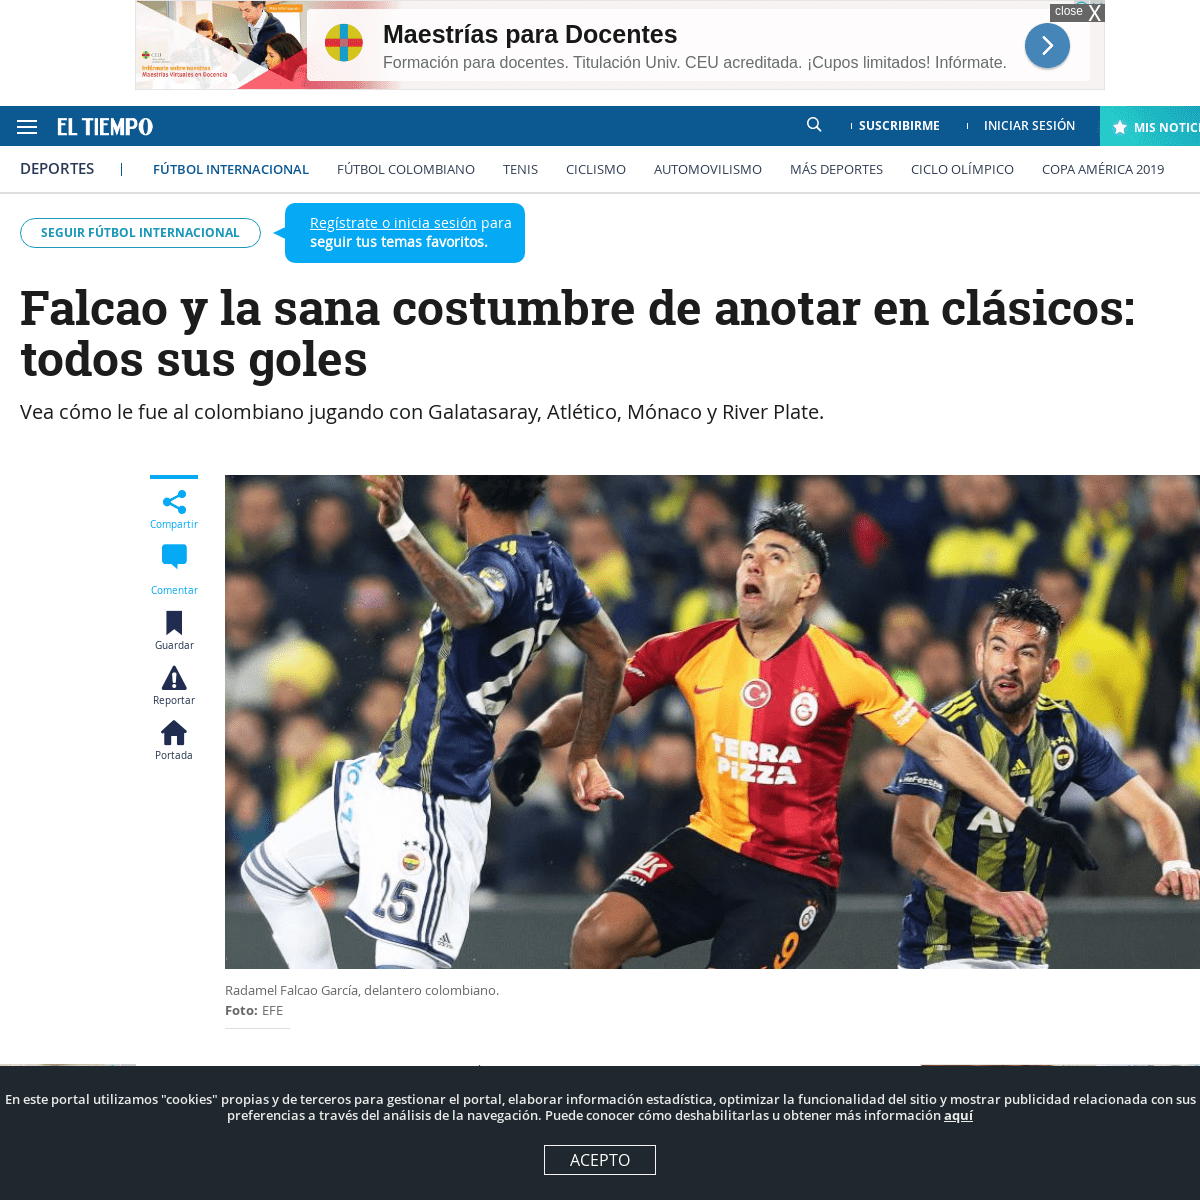 A complete backup of www.eltiempo.com/deportes/futbol-internacional/radamel-falcao-hoy-goles-en-clasicos-galatasaray-real-madrid